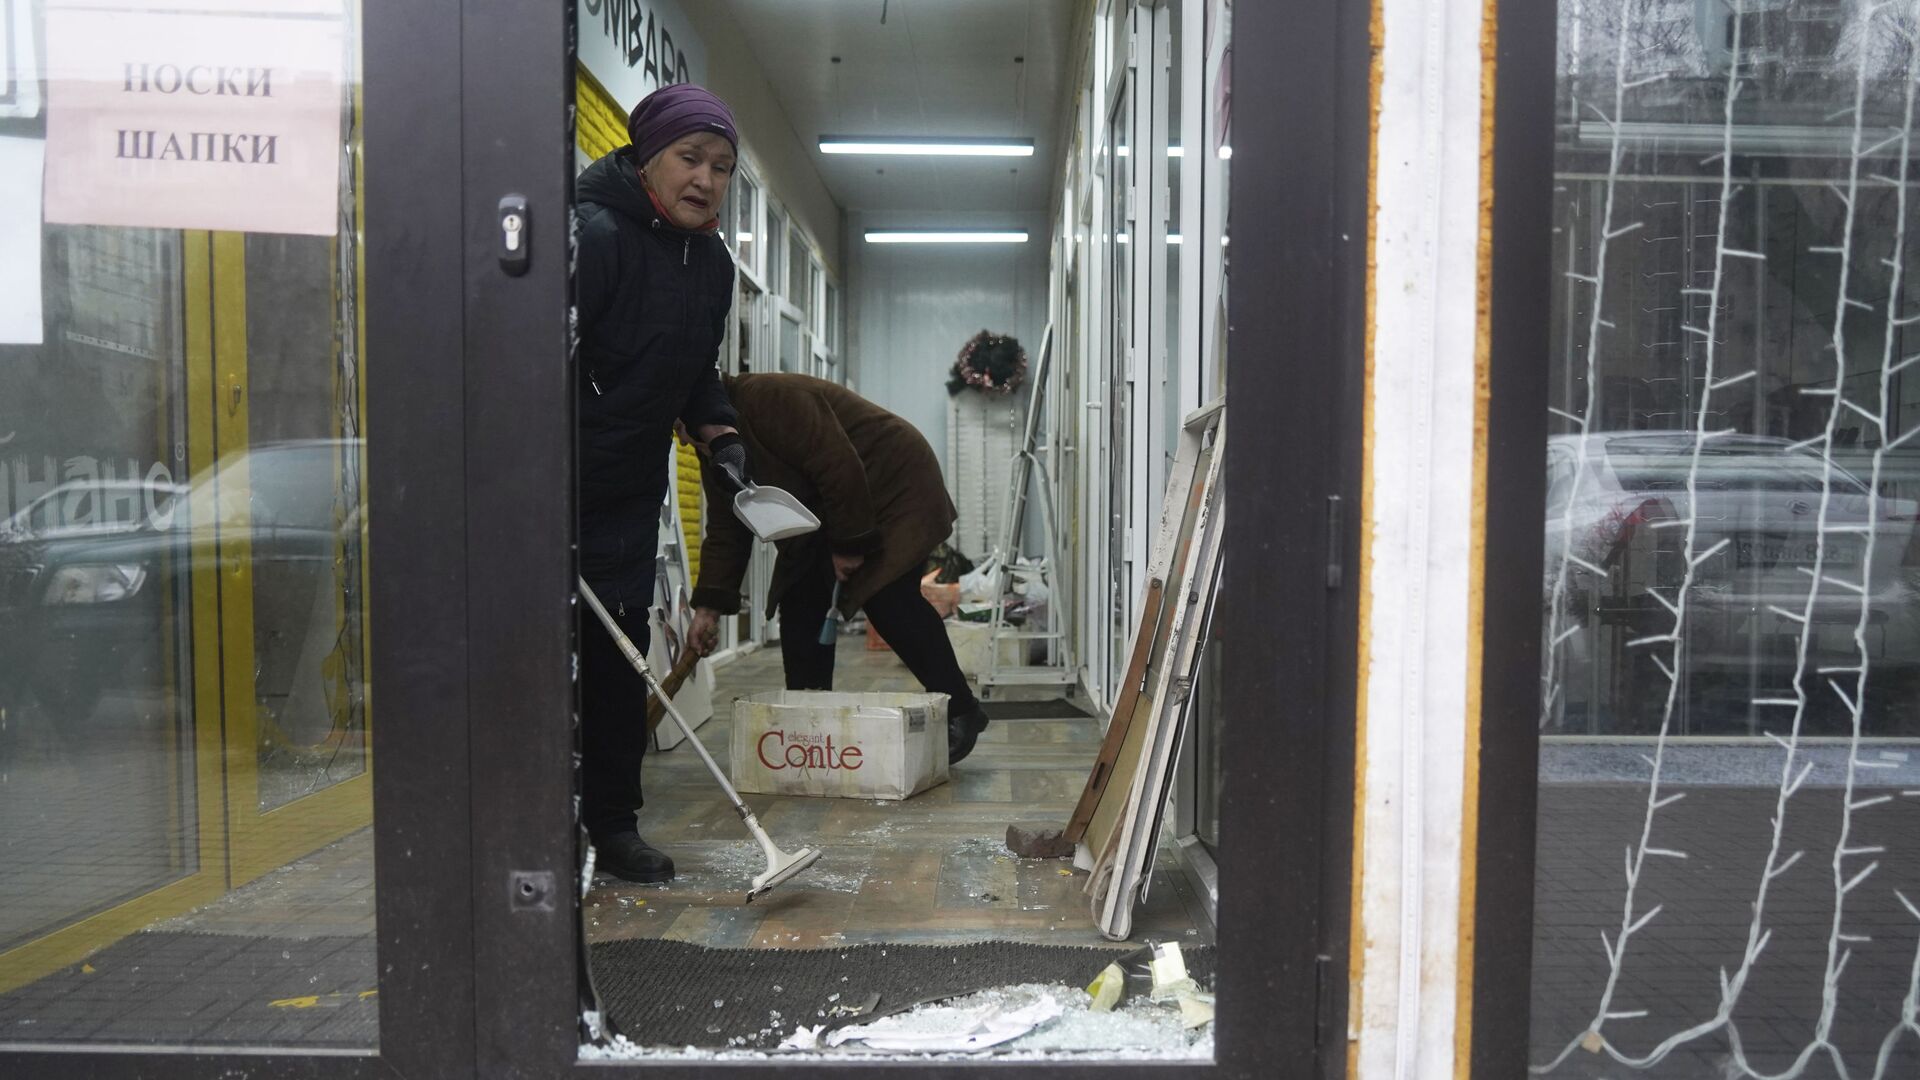 Продавцы убирают магазин, который был взломан и разграблен во время столкновений в Алматы - Sputnik Казахстан, 1920, 20.01.2022